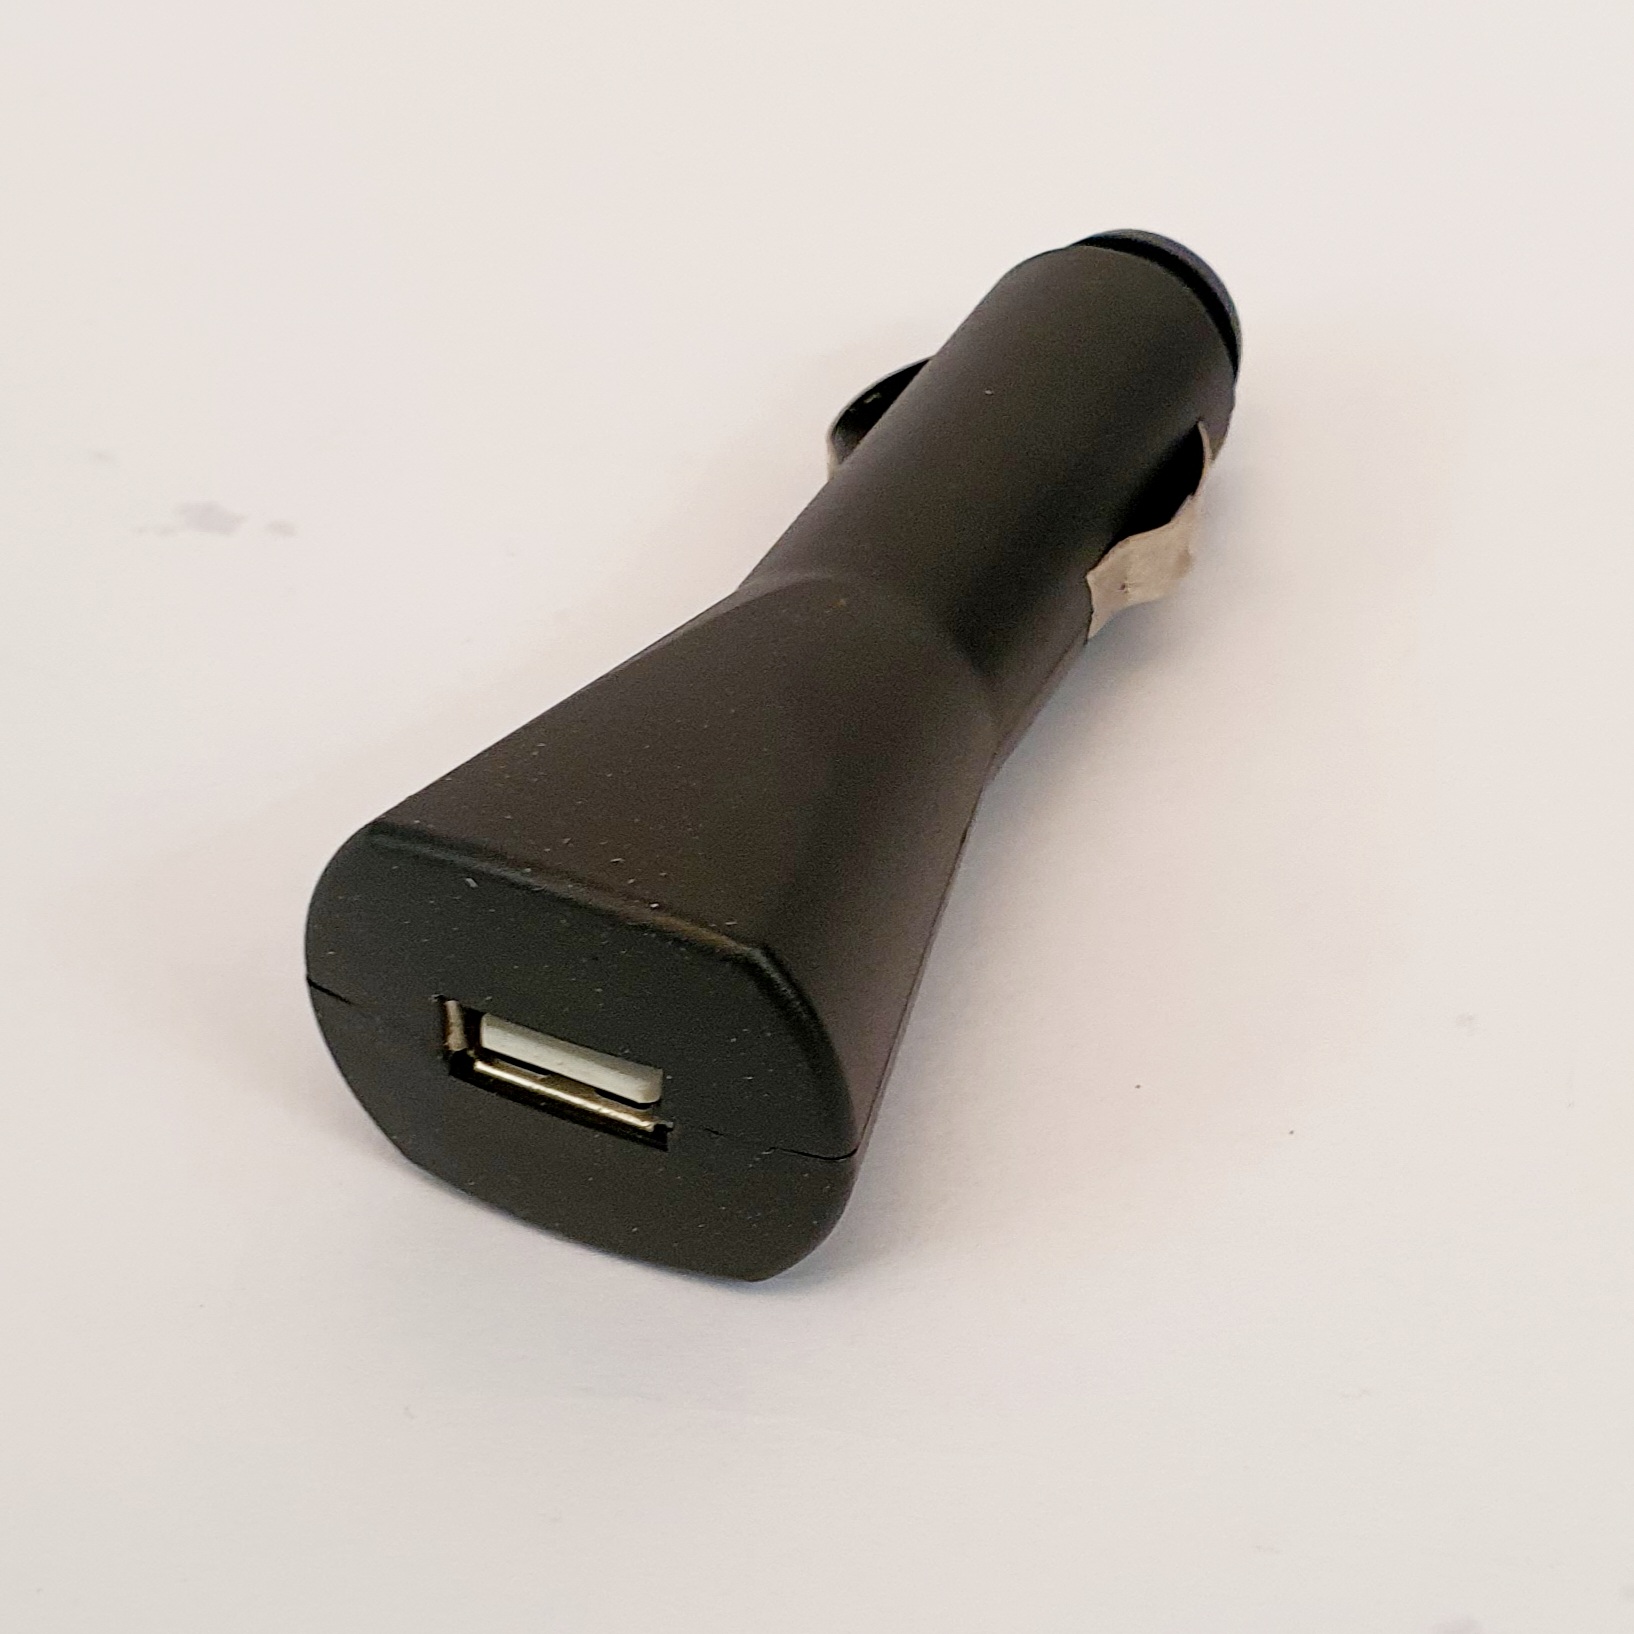 شارژر فندکی 5 ولت مدل USB crger